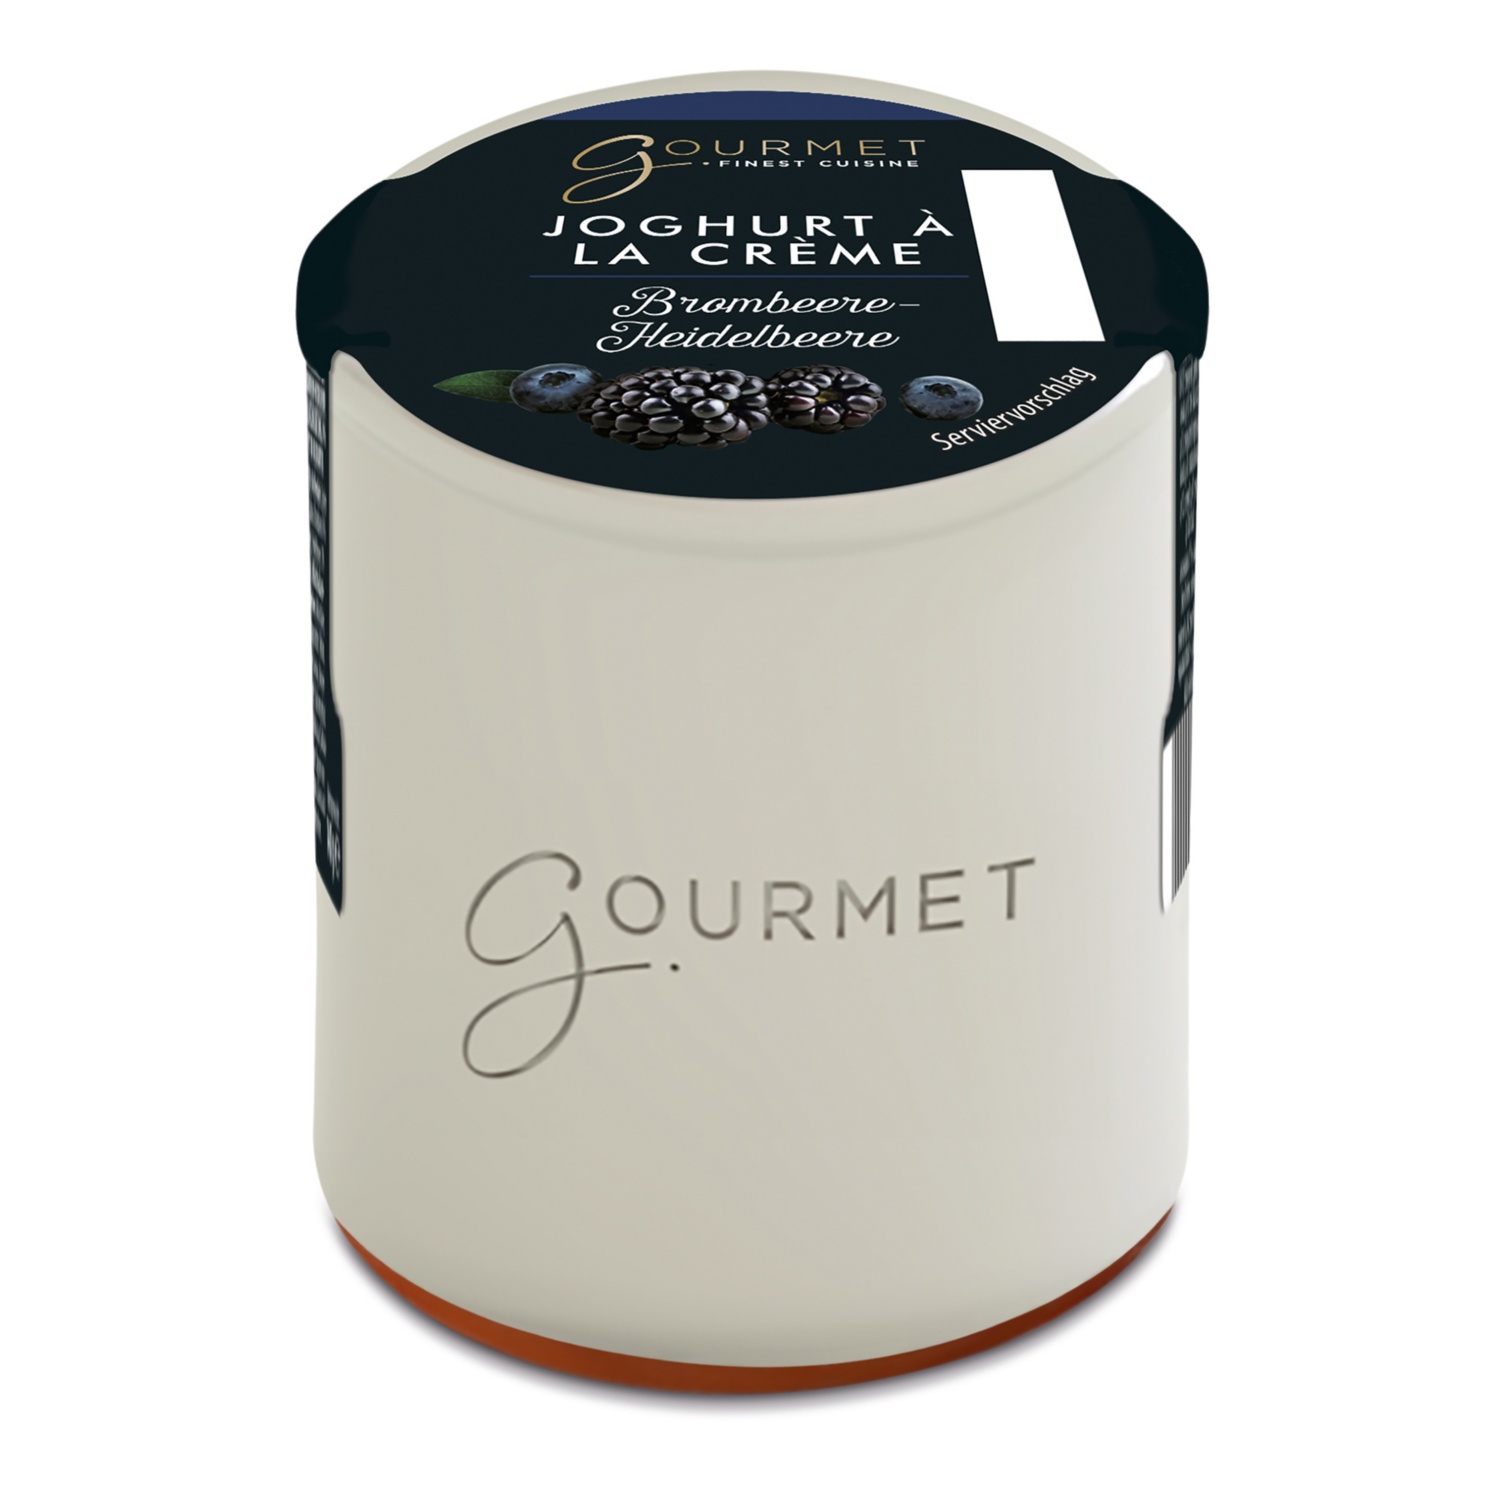 GOURMET FINEST CUISINE Joghurt à la creme, Brombeer-Heidelbeere